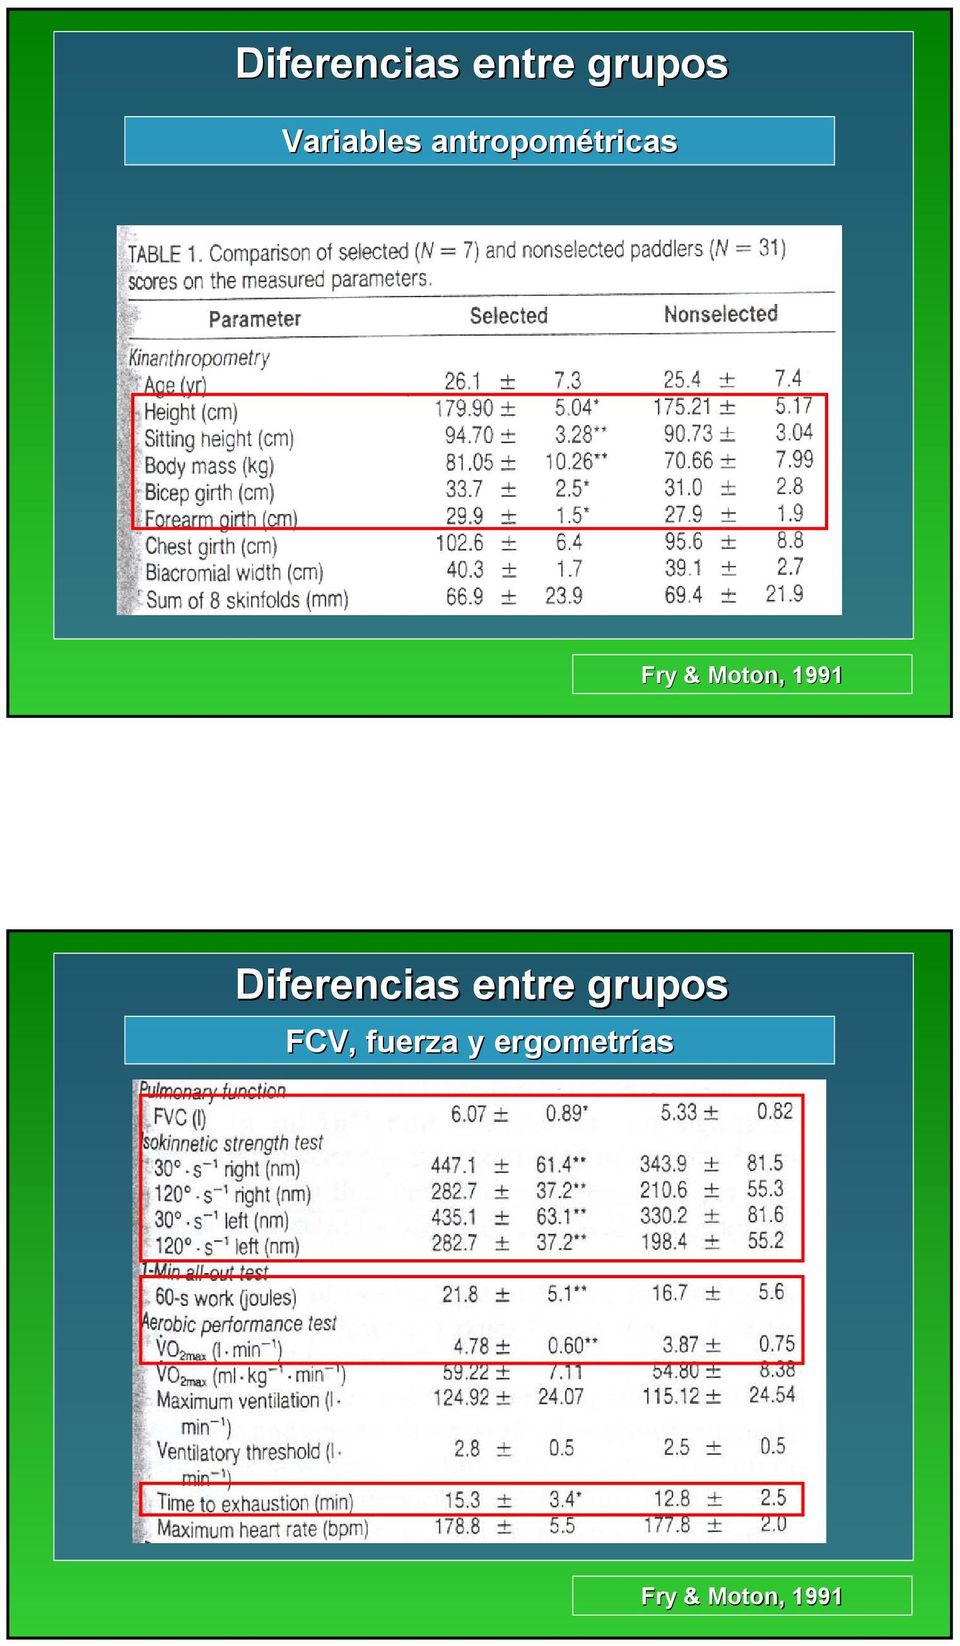 1991 Diferencias entre grupos FCV,